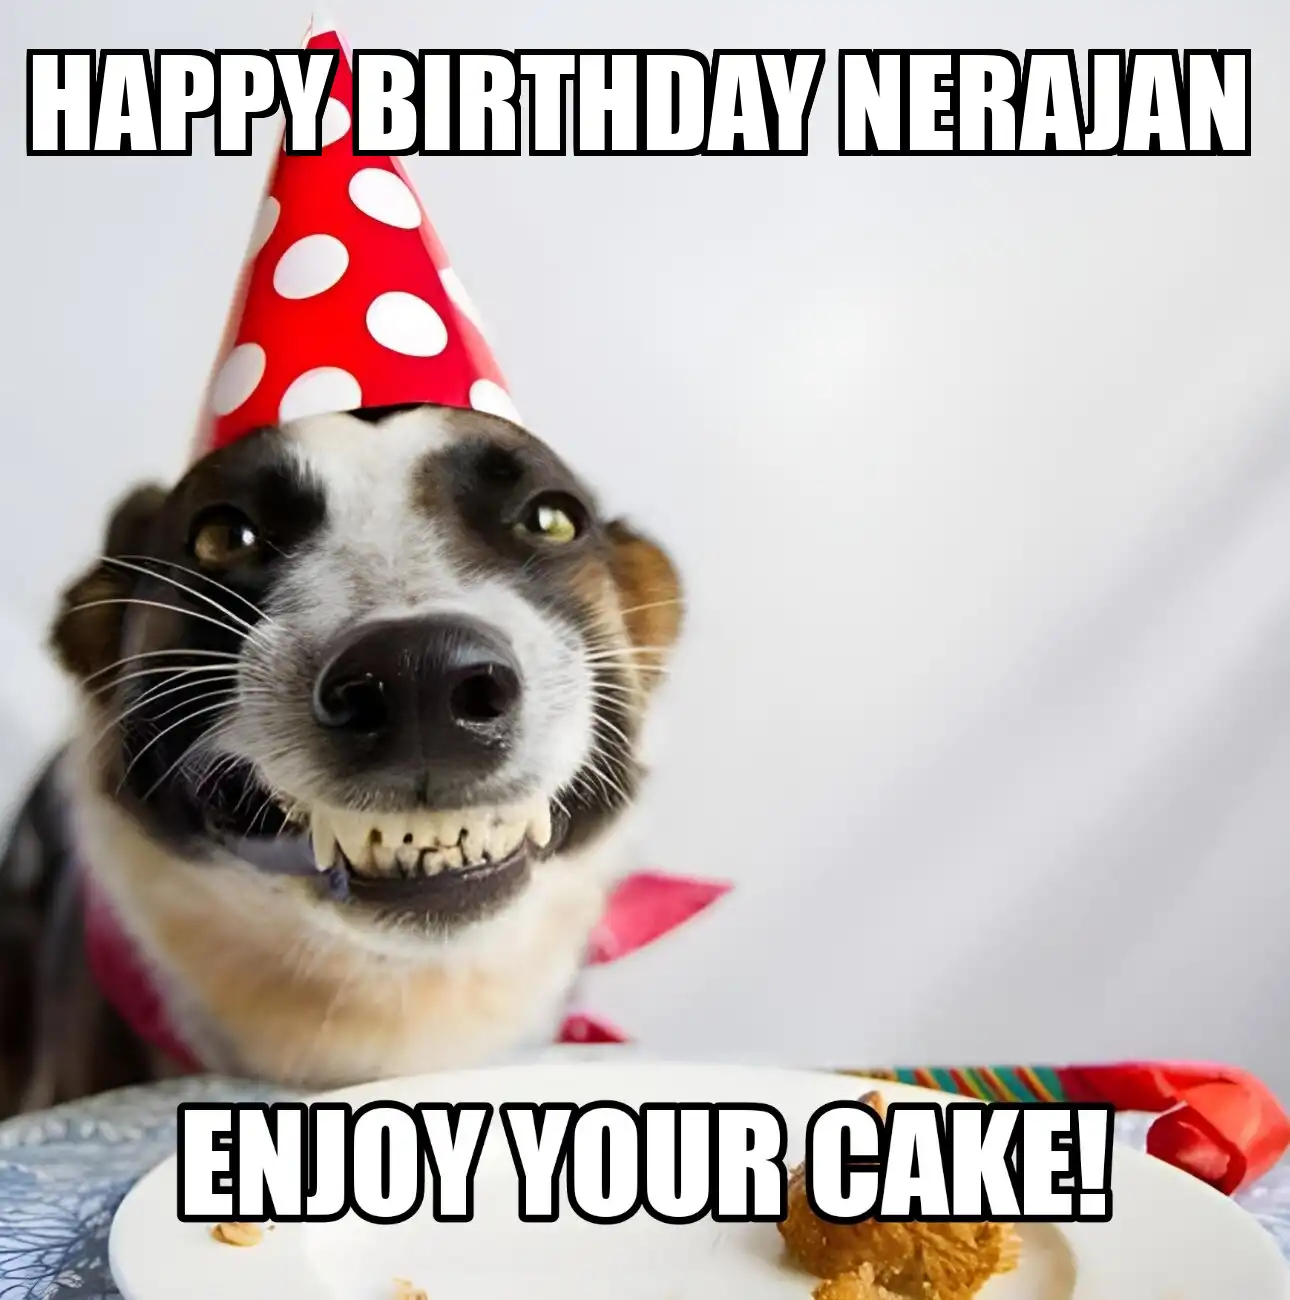 Happy Birthday Nerajan Enjoy Your Cake Dog Meme